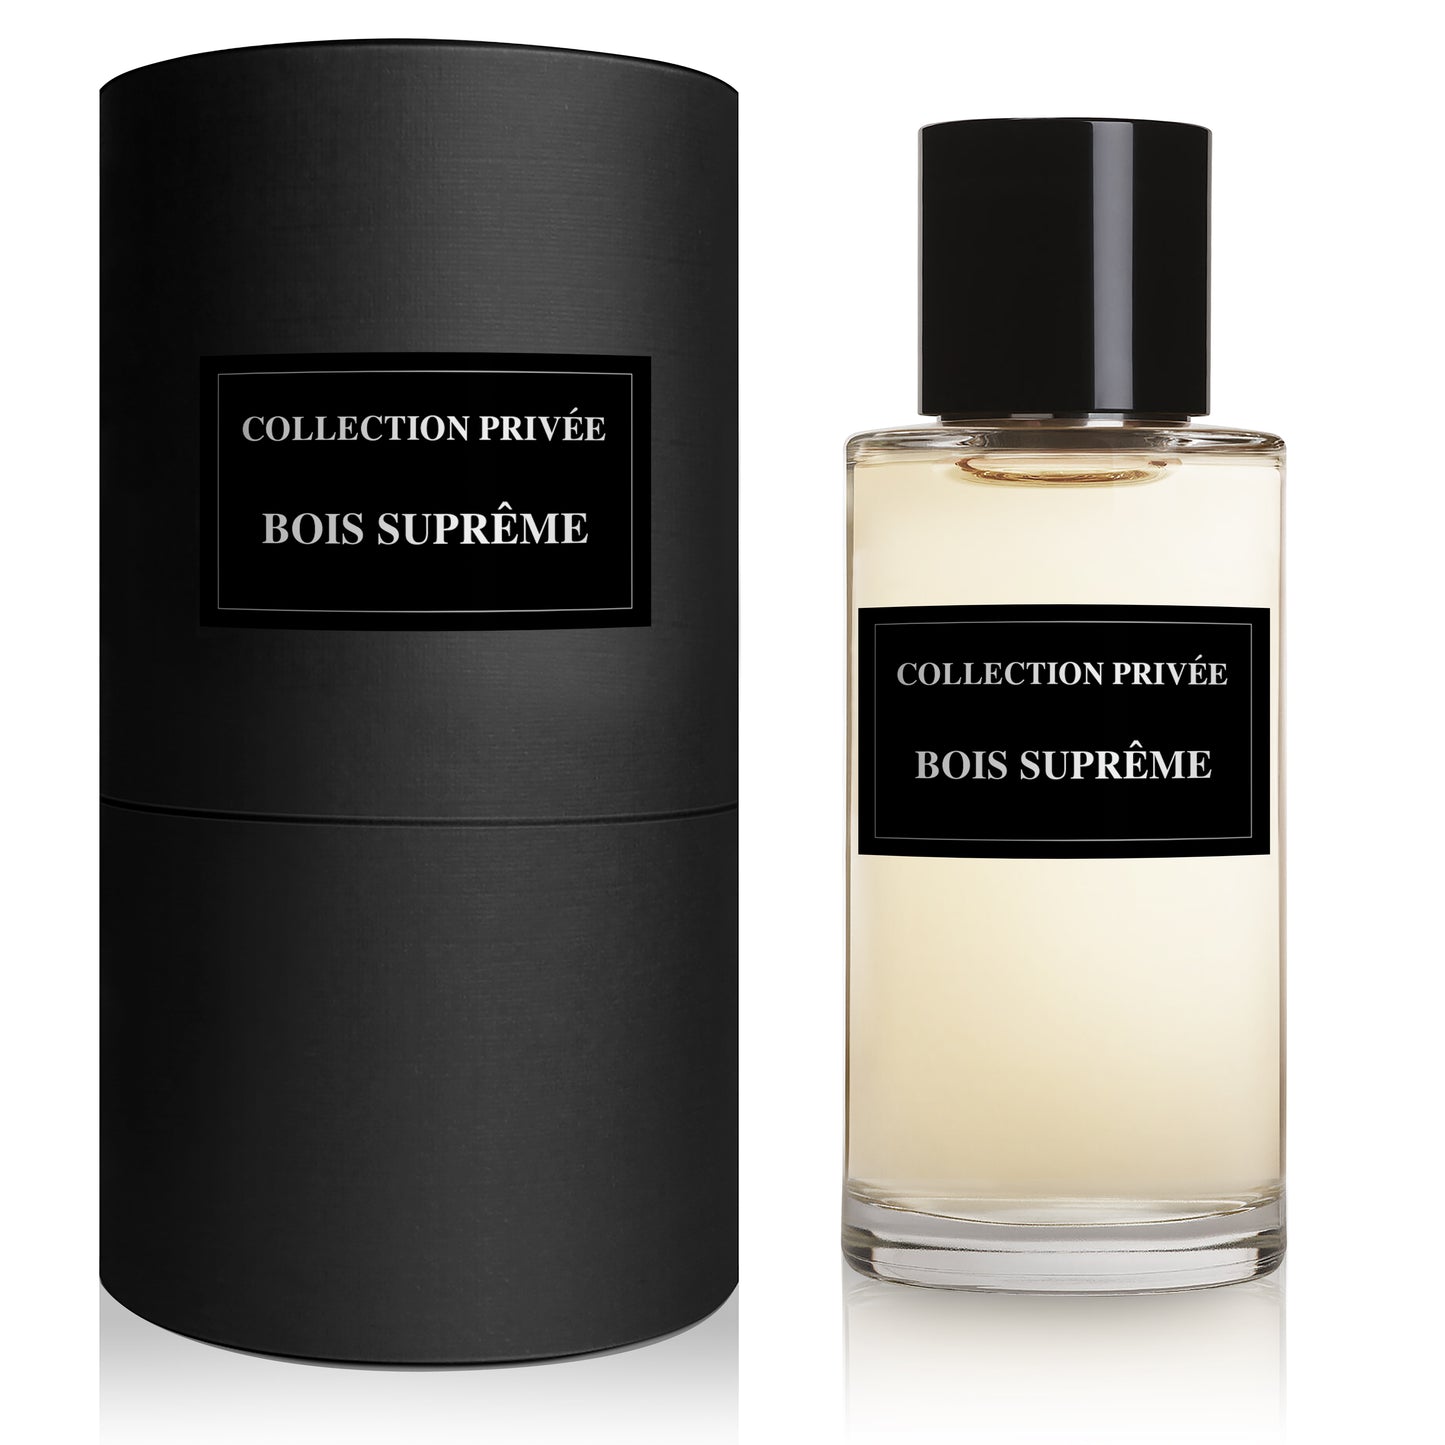 Parfum Bois Suprême - Collection Privée, apa de parfum 50 ml, unisex